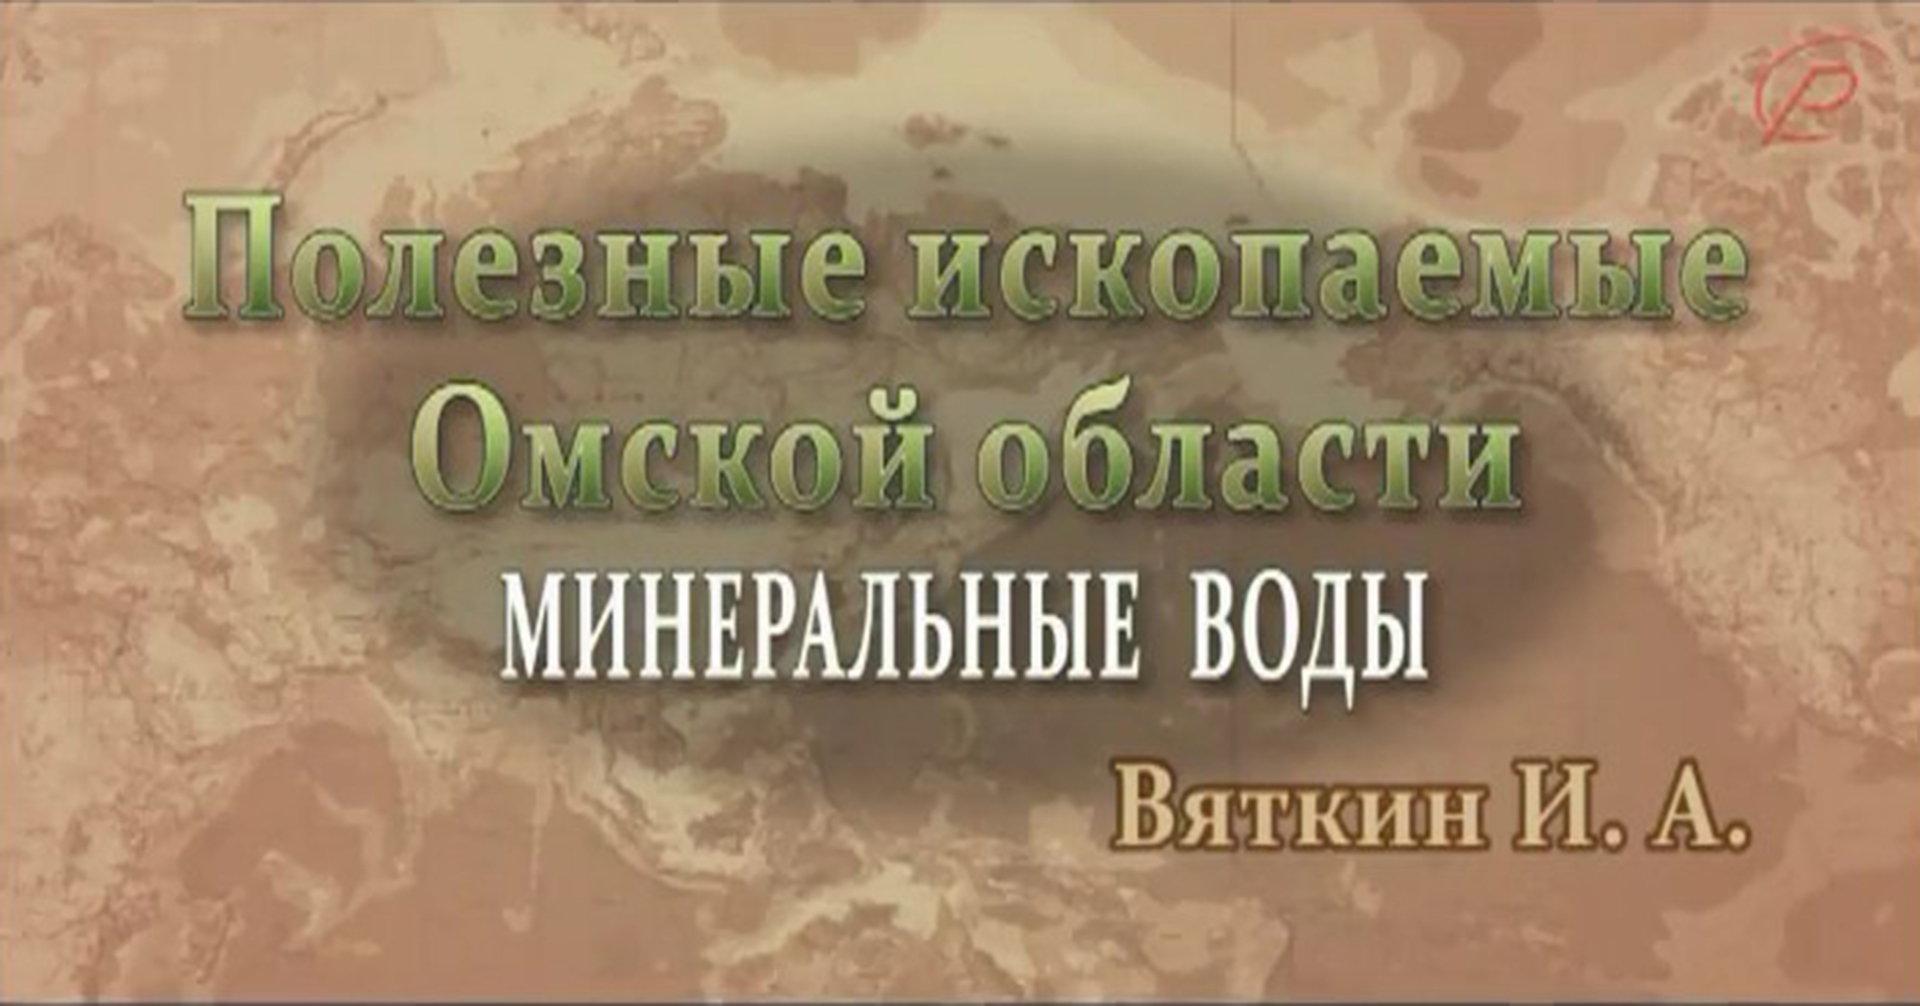 Полезные ископаемые Омской области - минеральные воды